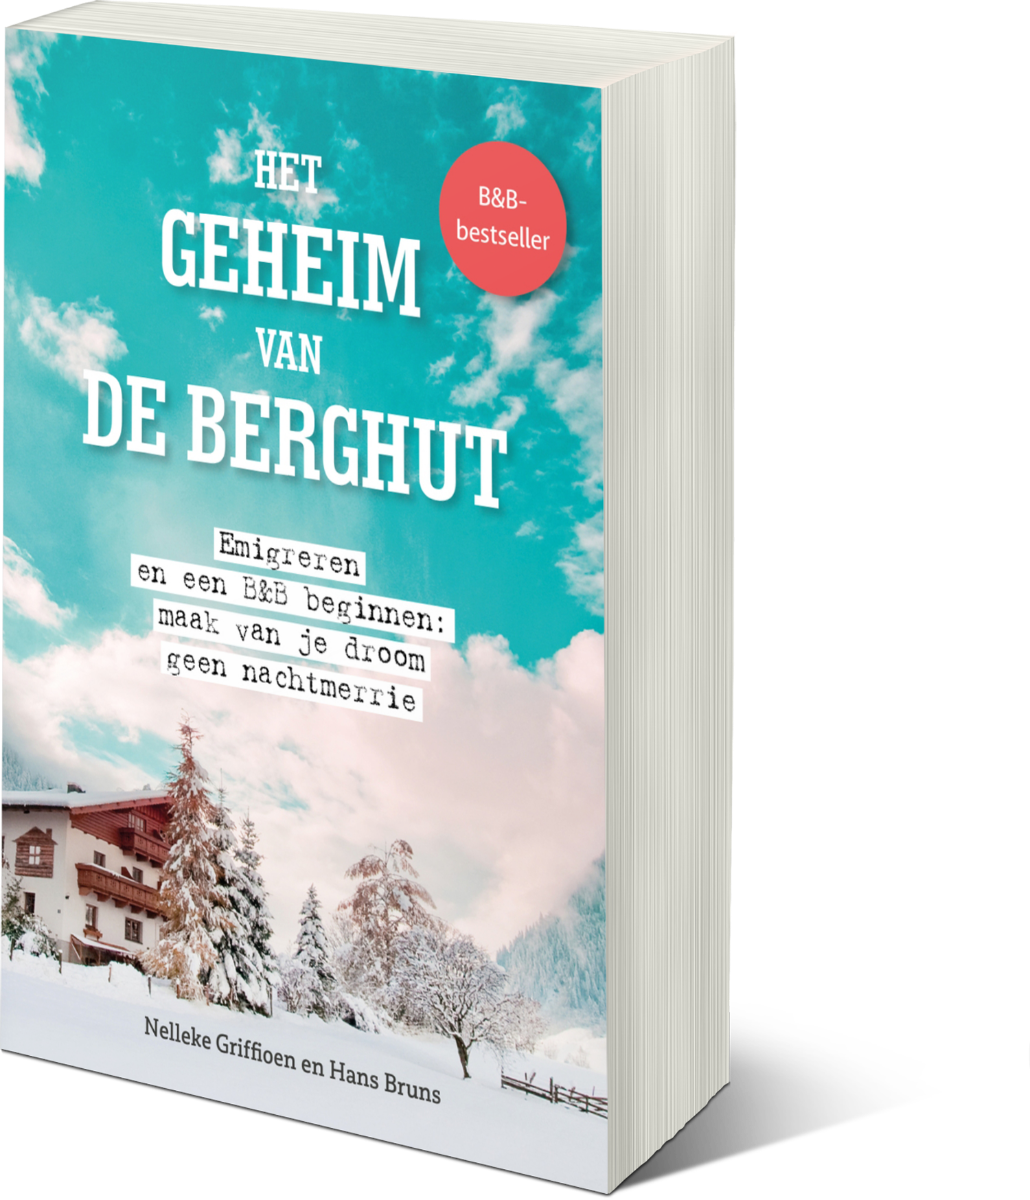 Het geheim van de Berghut 2023 - voor-voorbestellingsactie - binnen Nederland